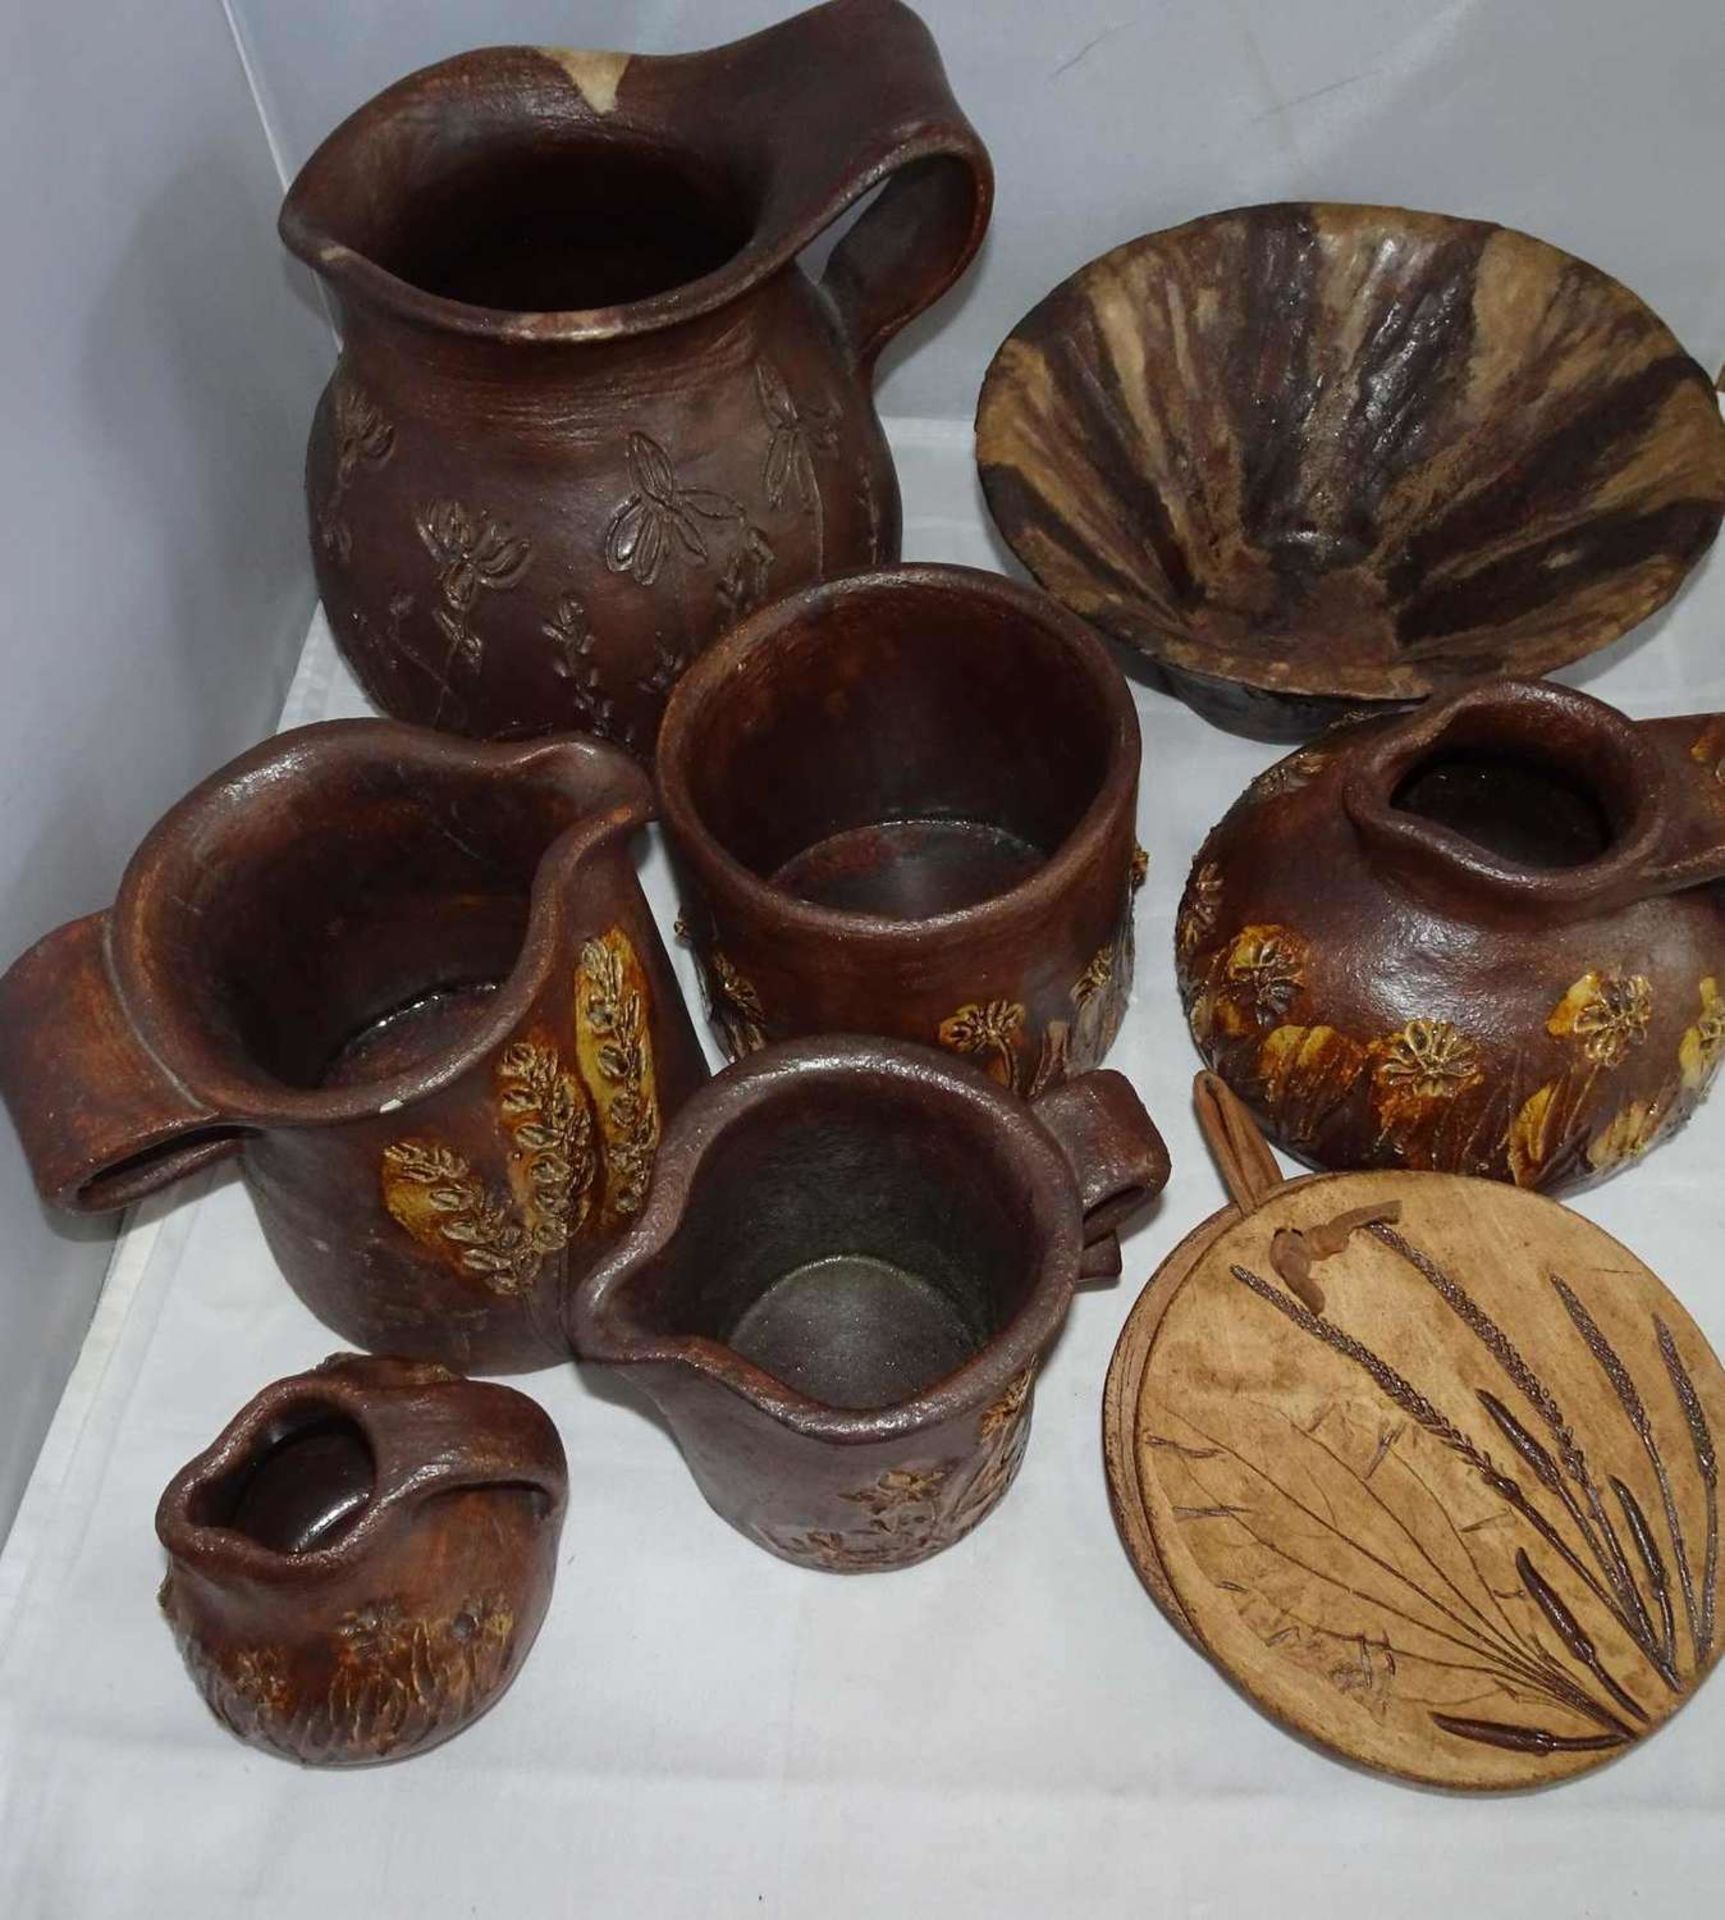 Lot Keramik, braun lasiert, meist signiert mit GEH, dabei Vasen, Krüge, Töpfe, etc. Bitte